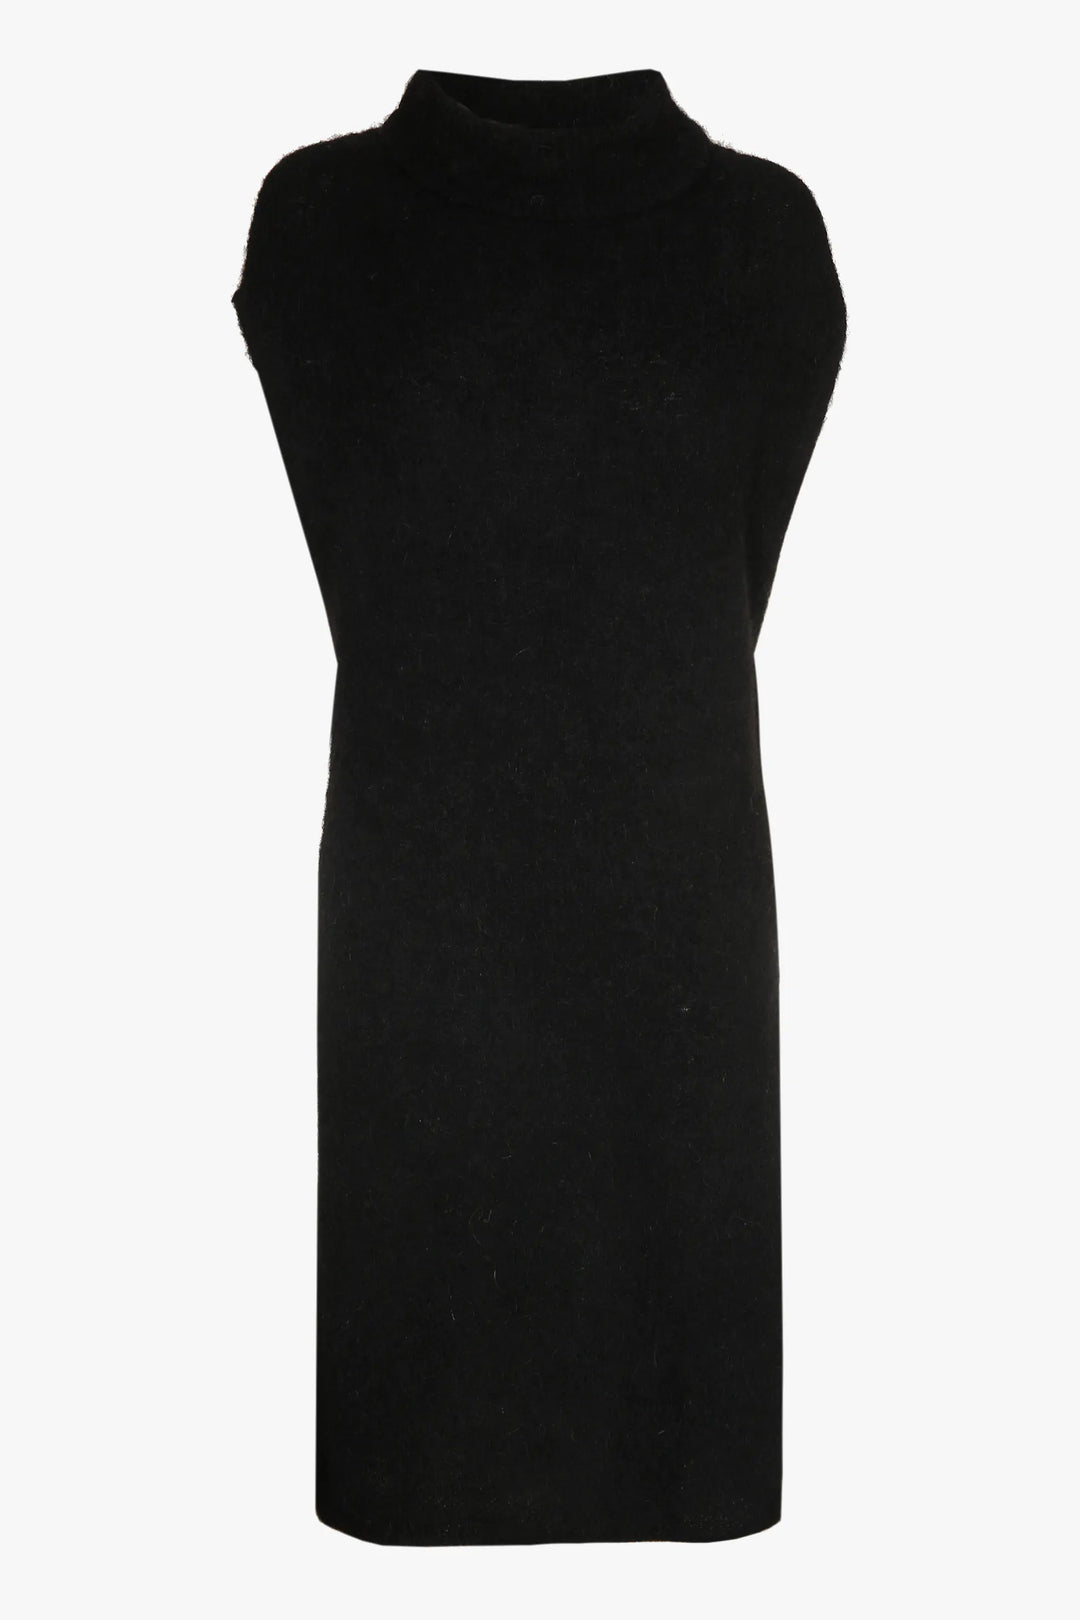 zwarte mouwloze jurk - xandres - - grote maten - dameskleding - kledingwinkel - herent - leuven